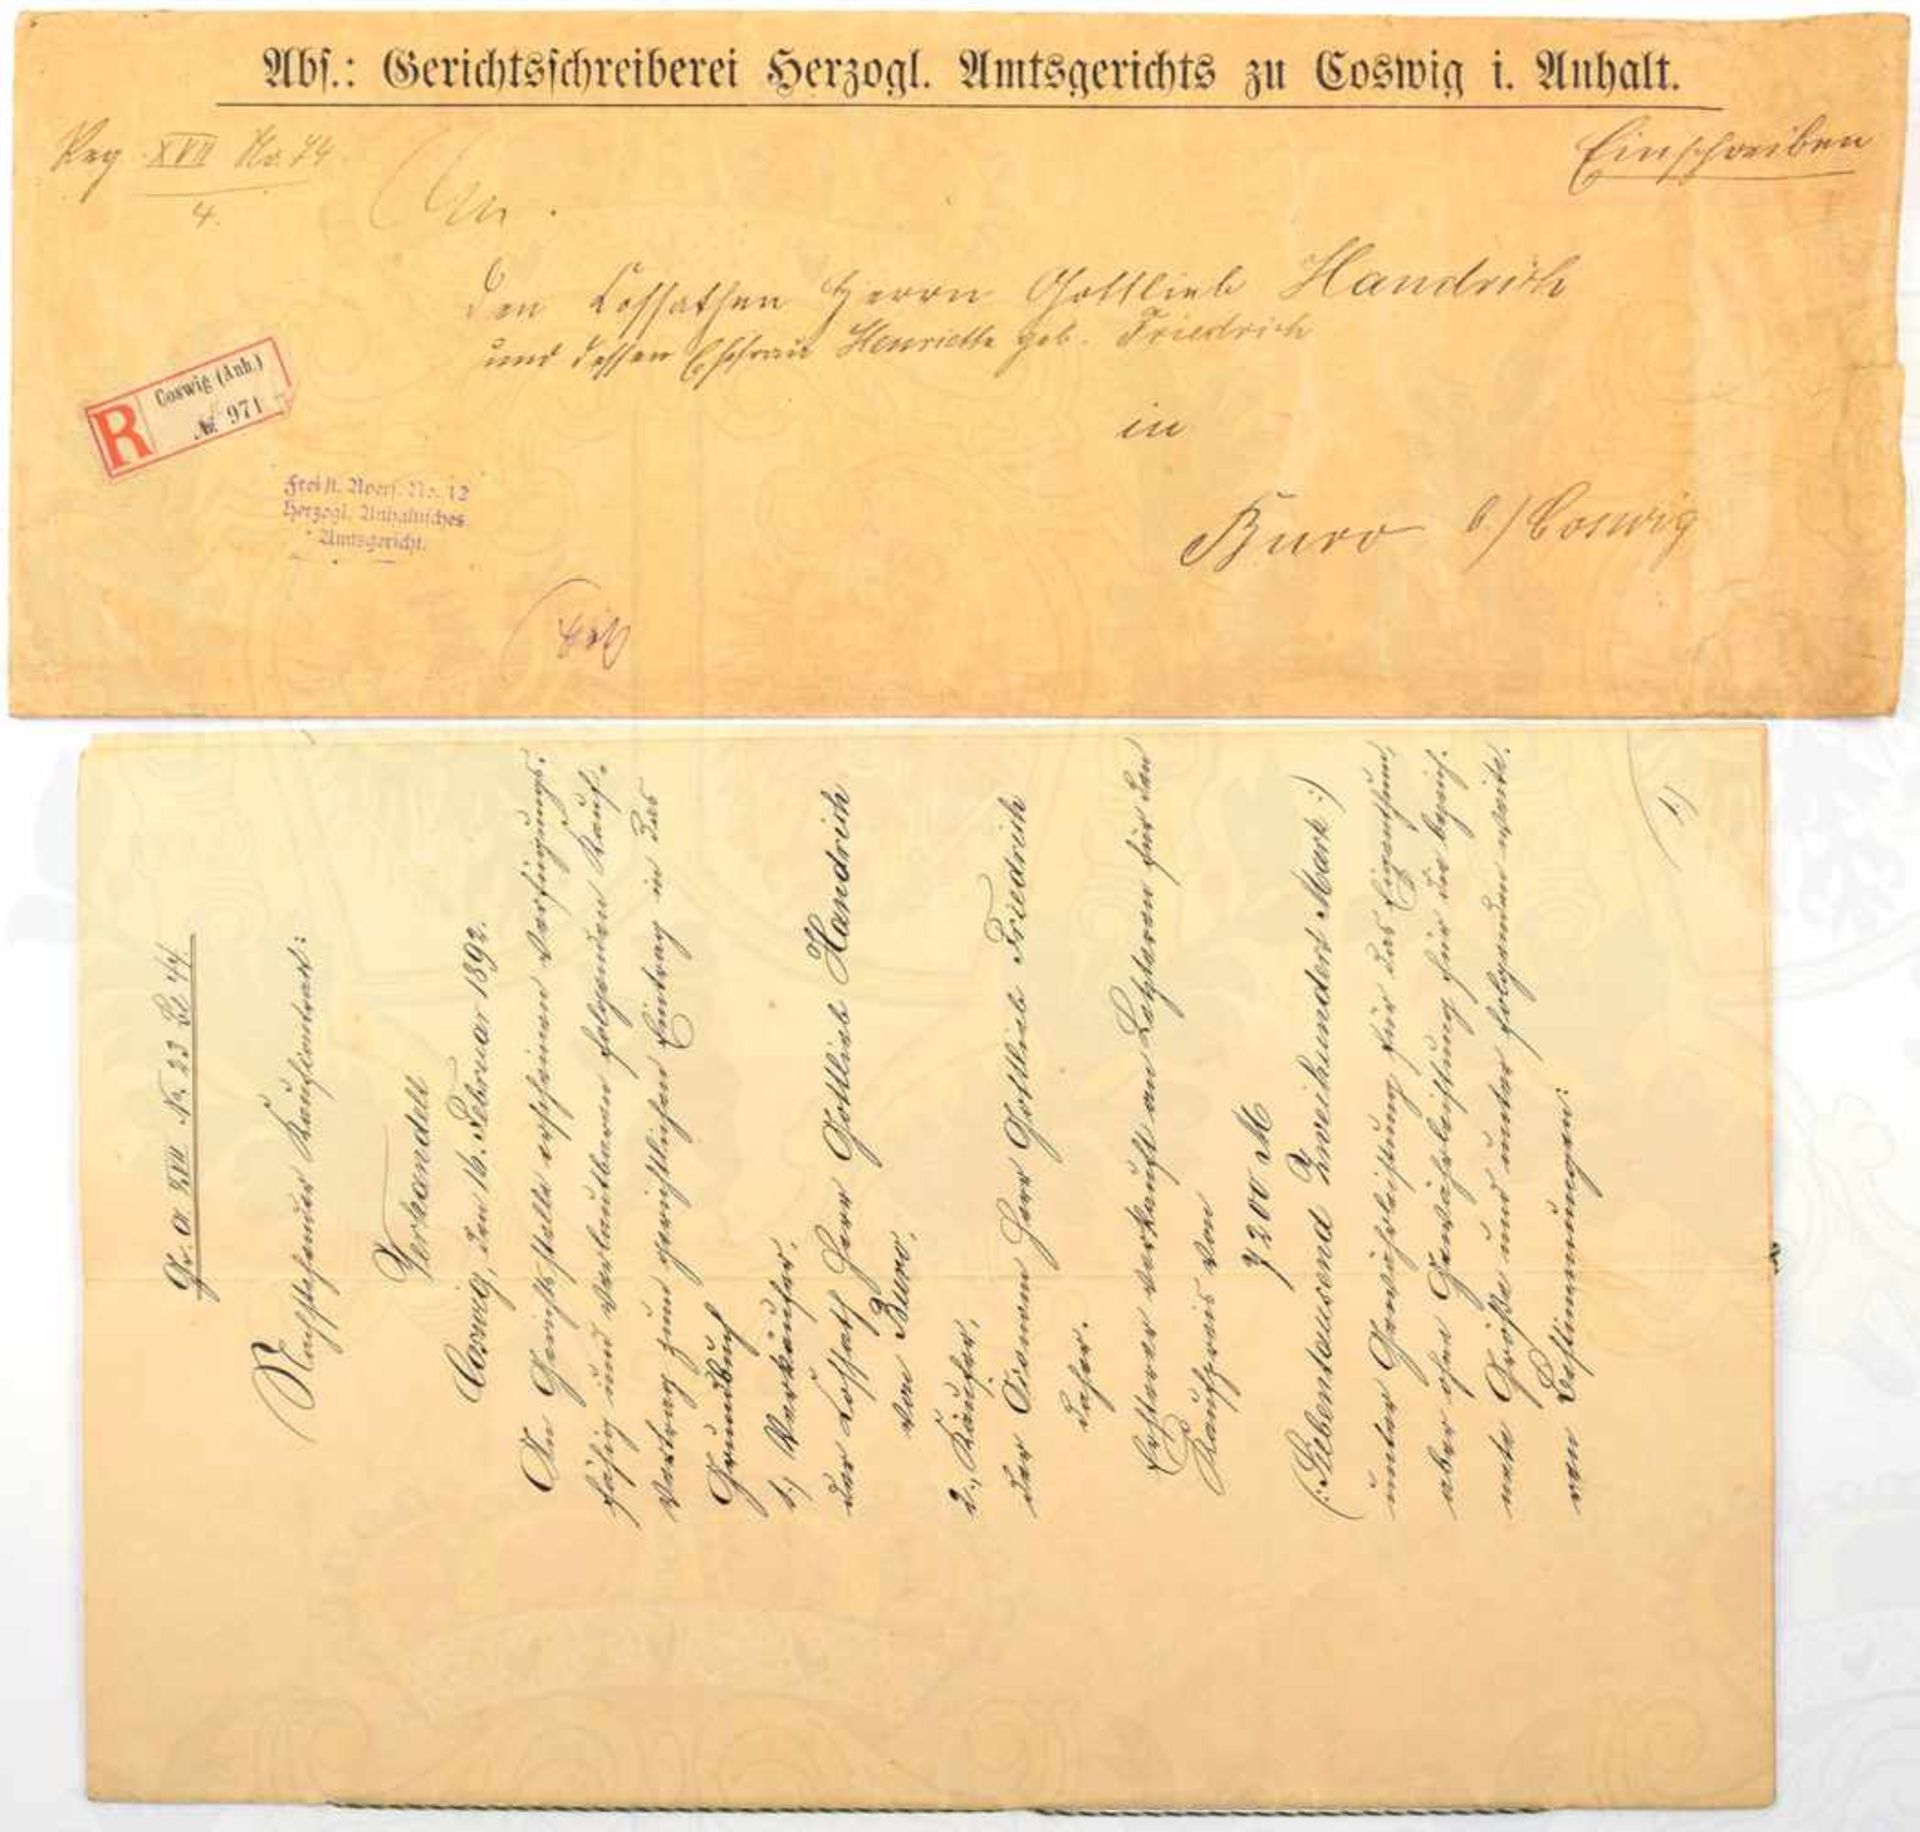 VERKAUFSVERTRAG, über ein Wohnhaus sowie mehrere Äcker u. Wiesen über 7200 Mark, 1892, 8